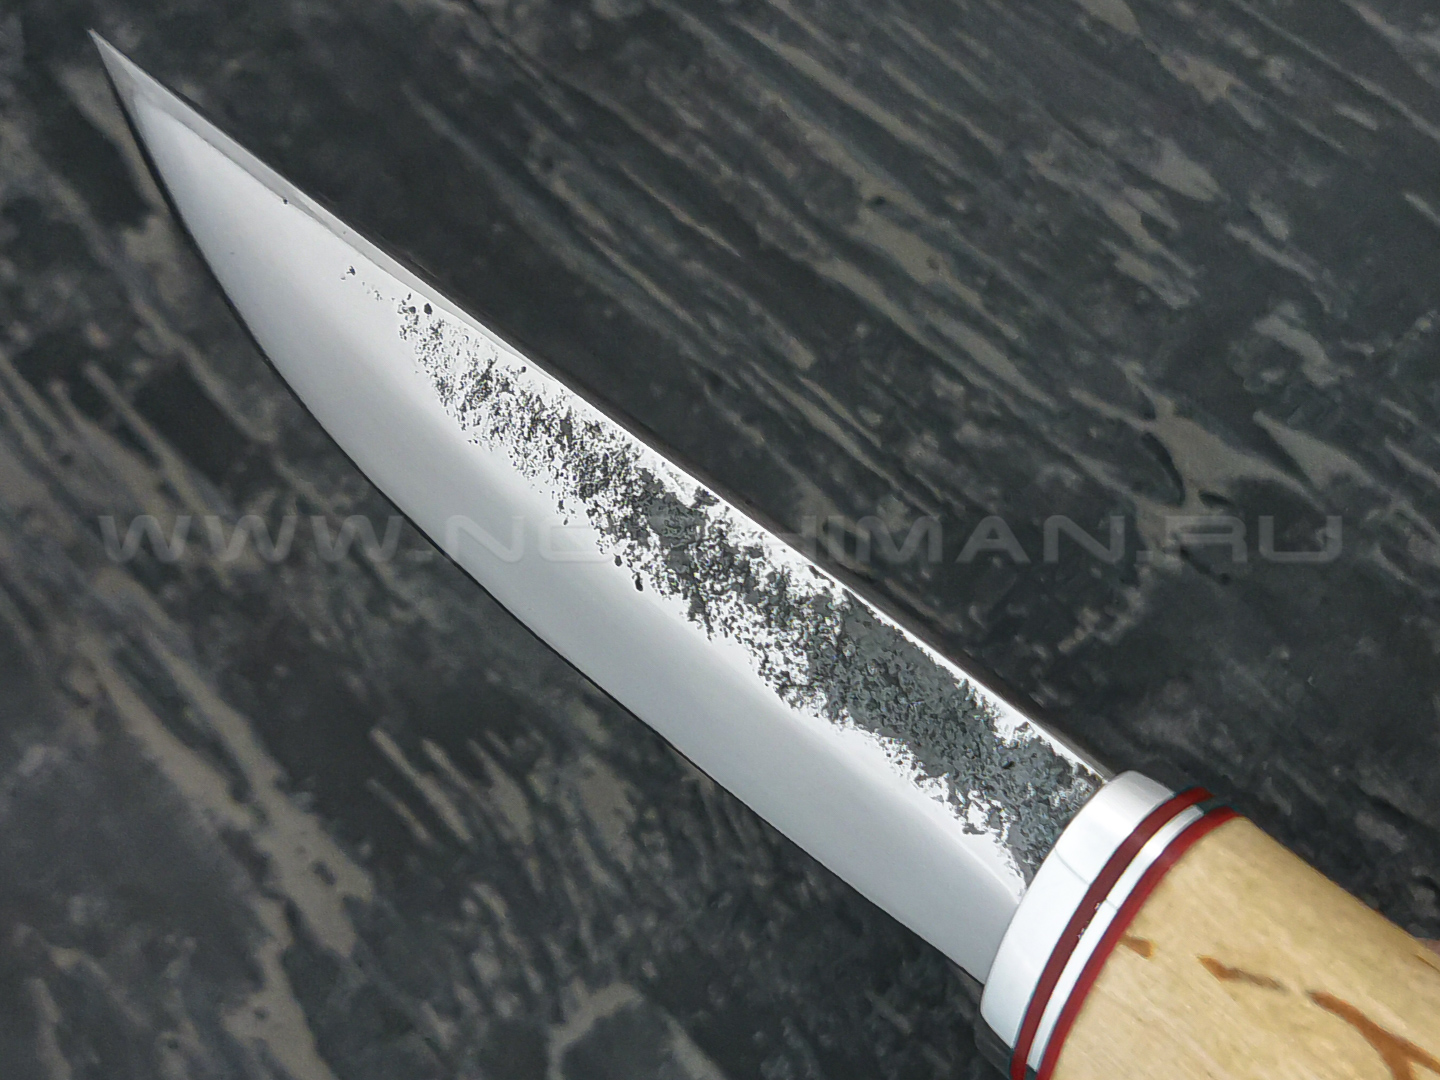 Нож "Якут" сталь Х12МФ, рукоять карельская береза, дюралюминий (Тов. Завьялова)